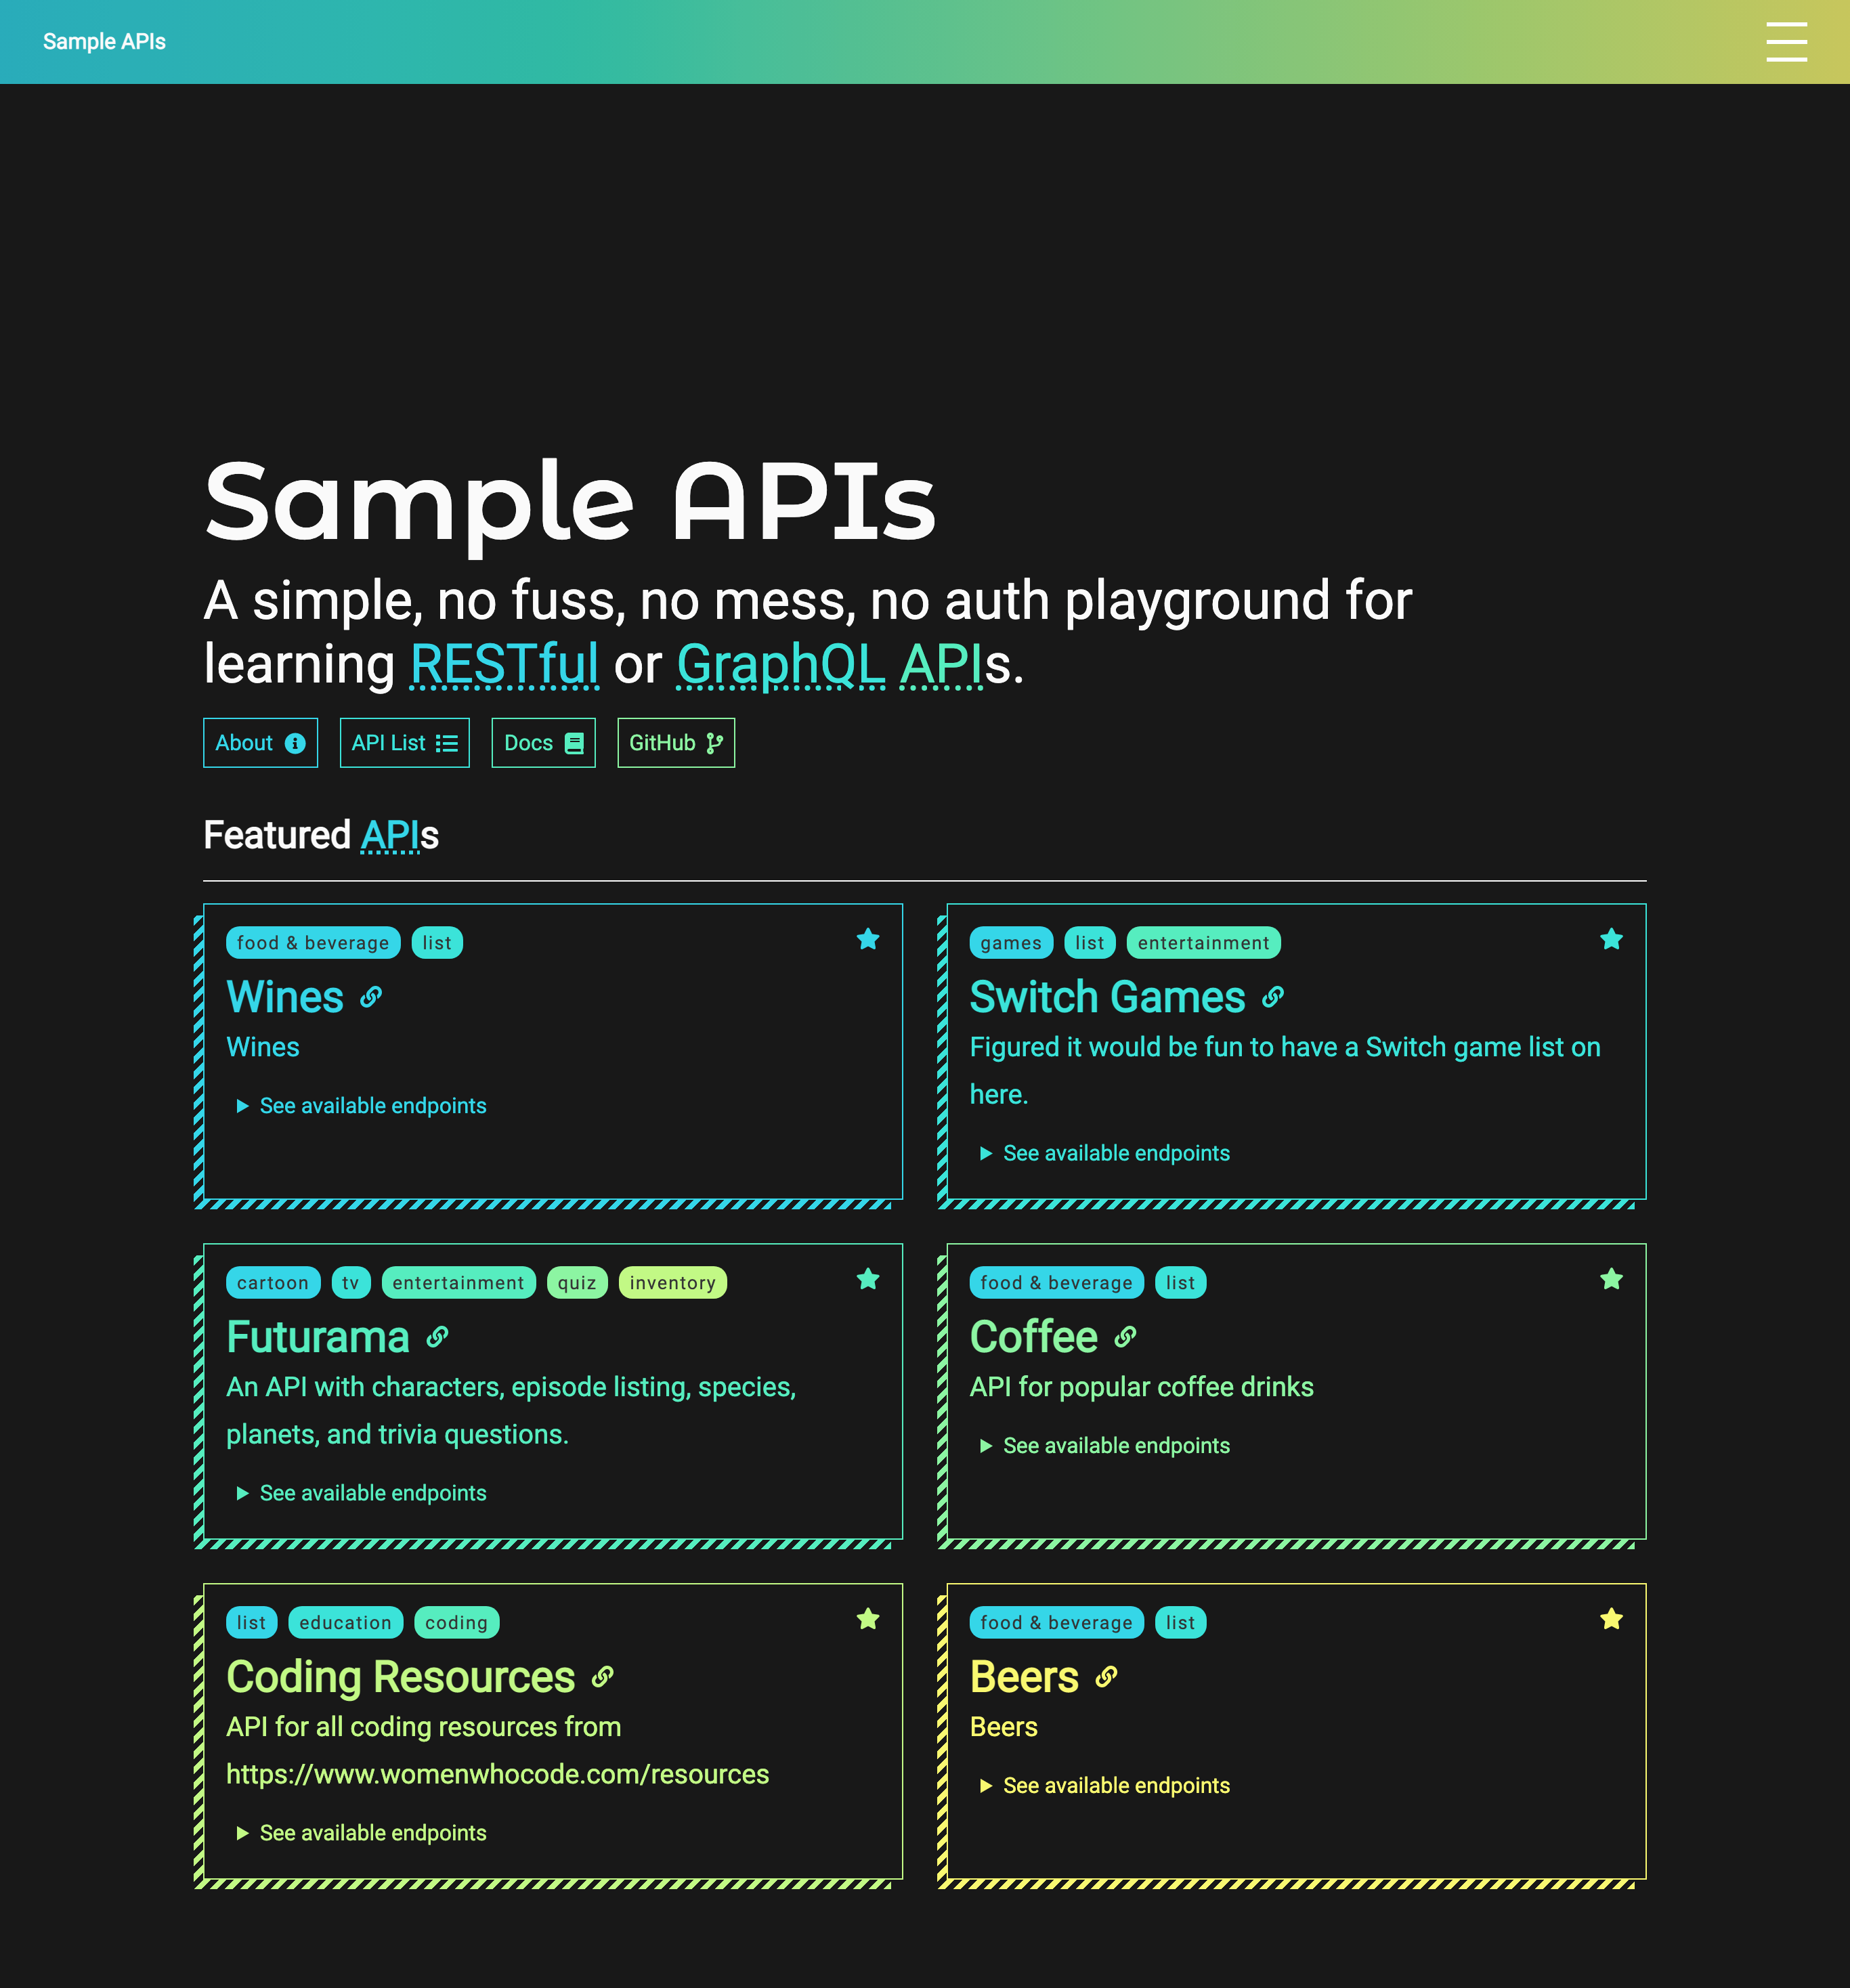 SampleAPI-3.0-Screenshot.png